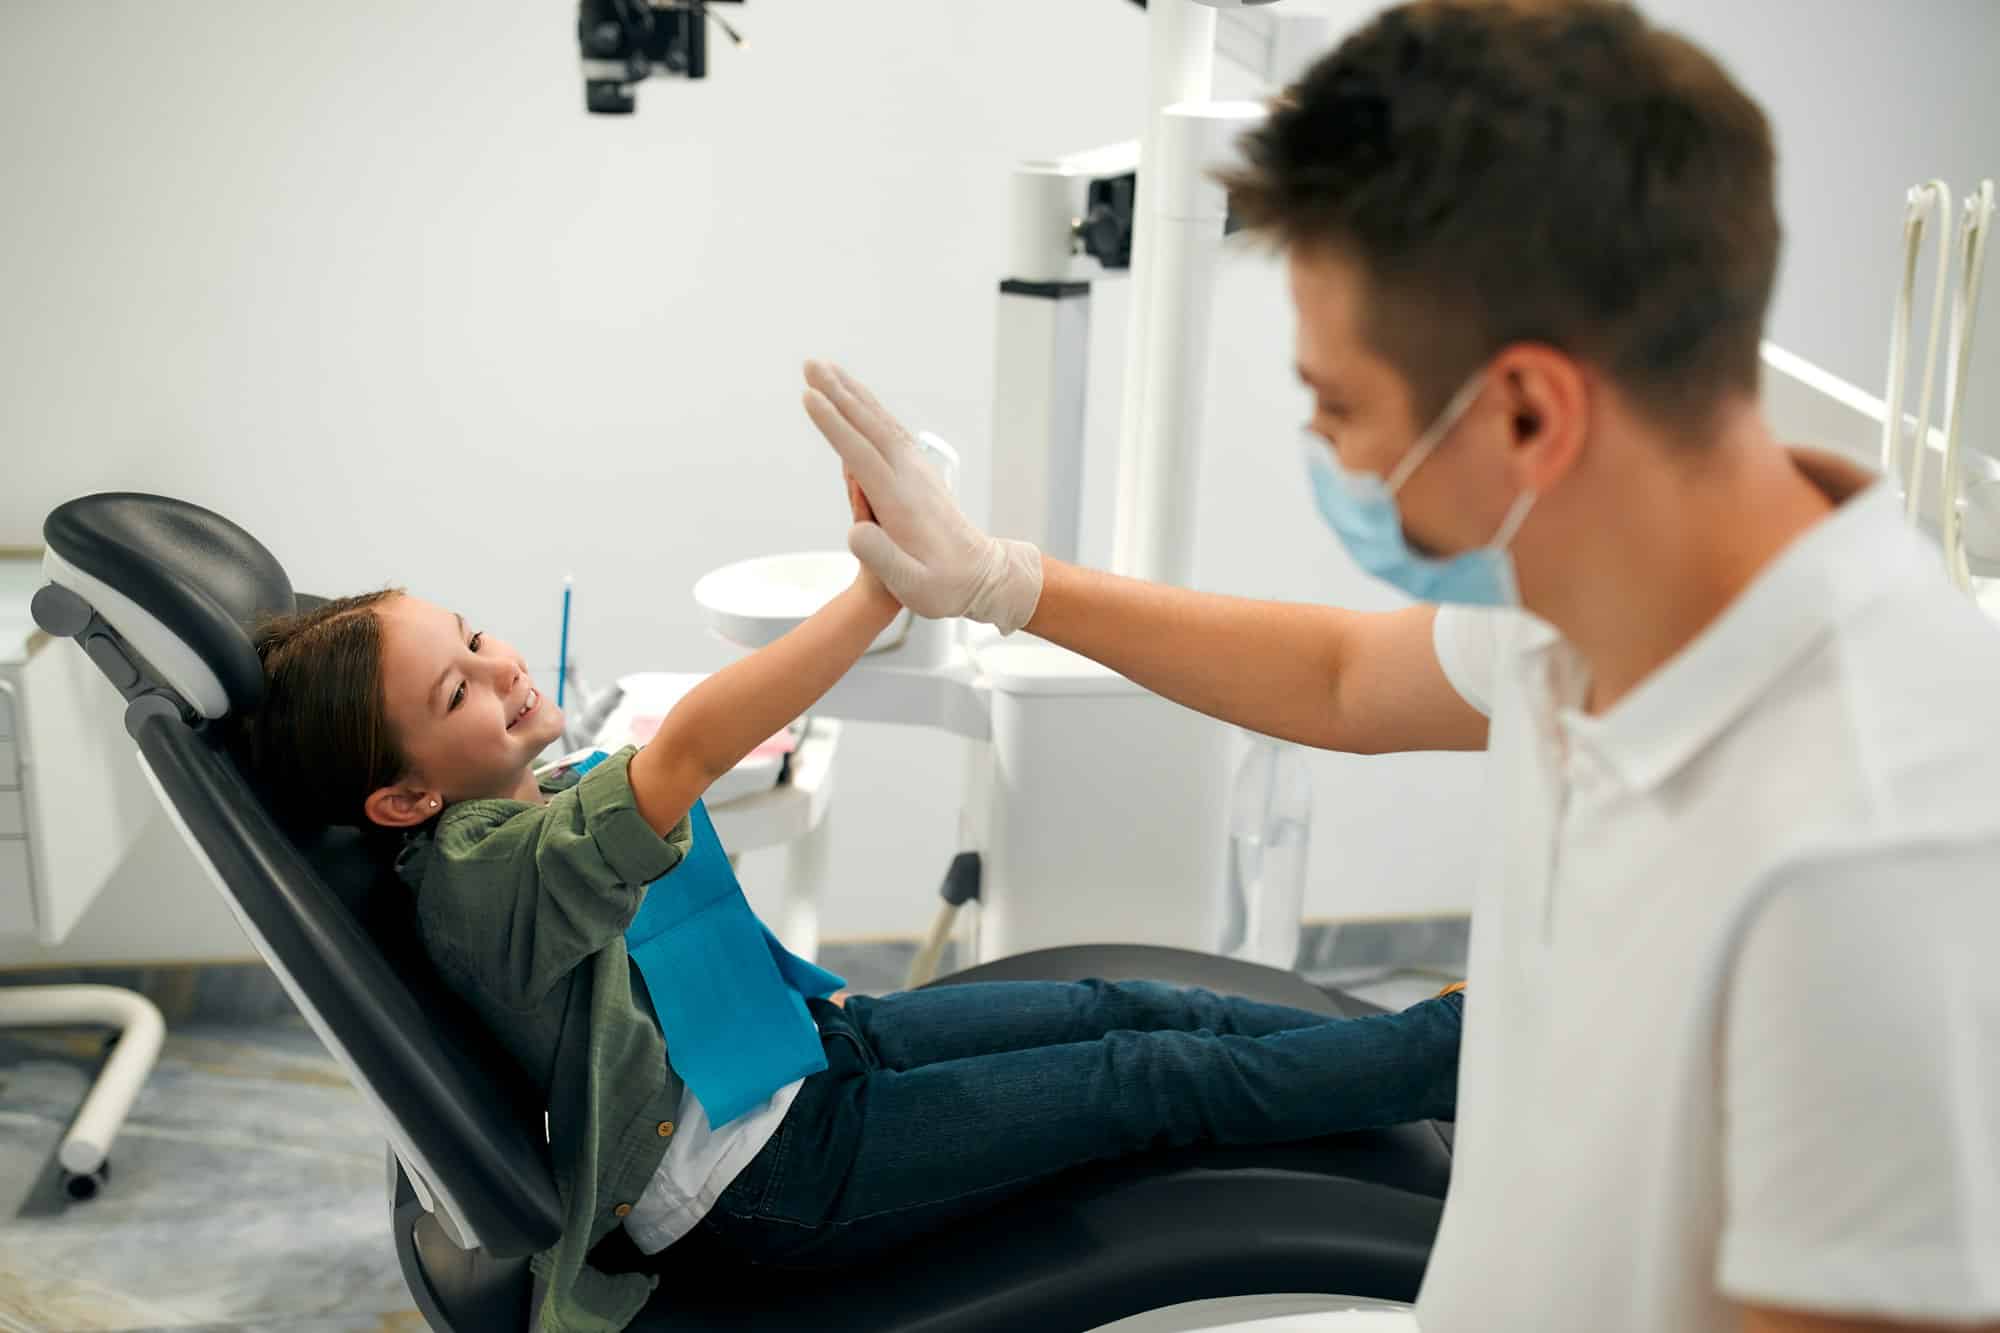 Les cliniques dentaires proposent-elles des services de télé dentisterie ?